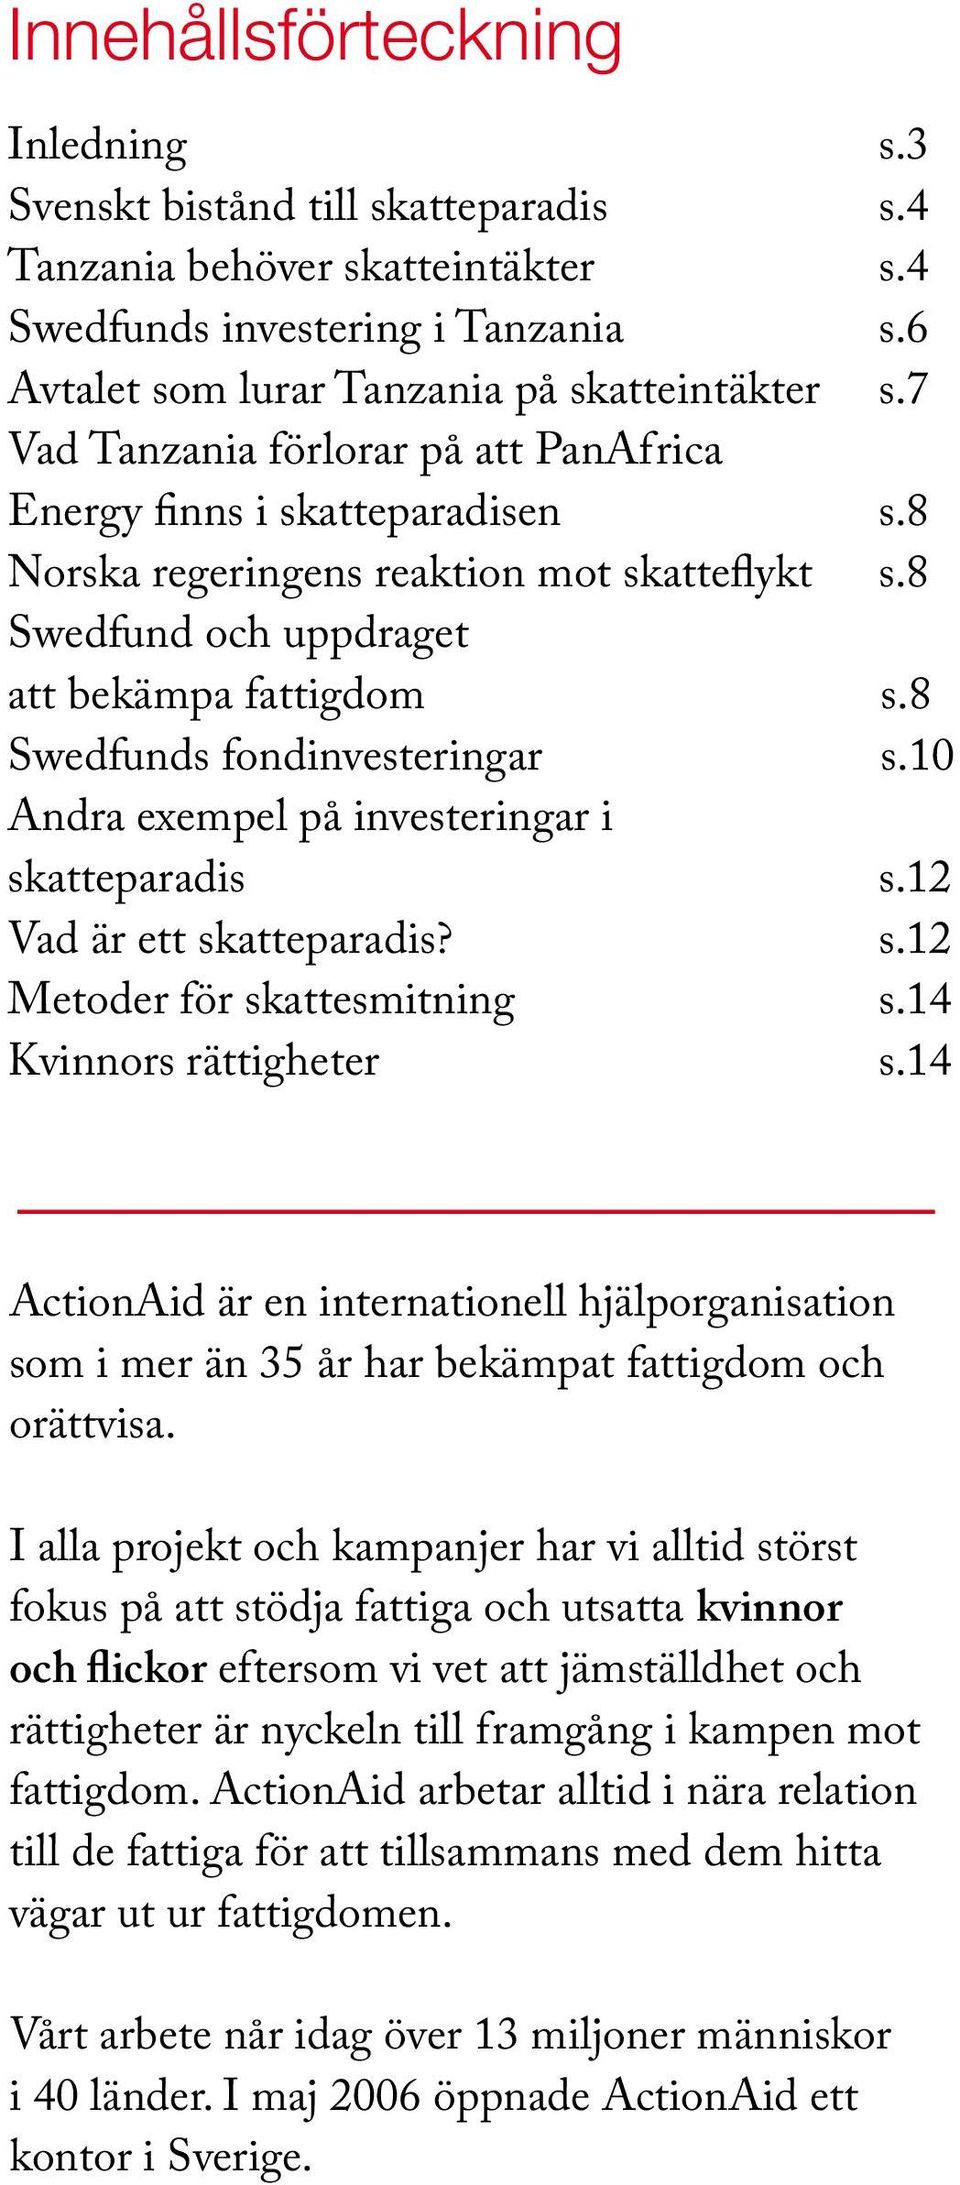 8 Swedfunds fondinvesteringar s.10 Andra exempel på investeringar i skatteparadis s.12 Vad är ett skatteparadis? s.12 Metoder för skattesmitning s.14 Kvinnors rättigheter s.